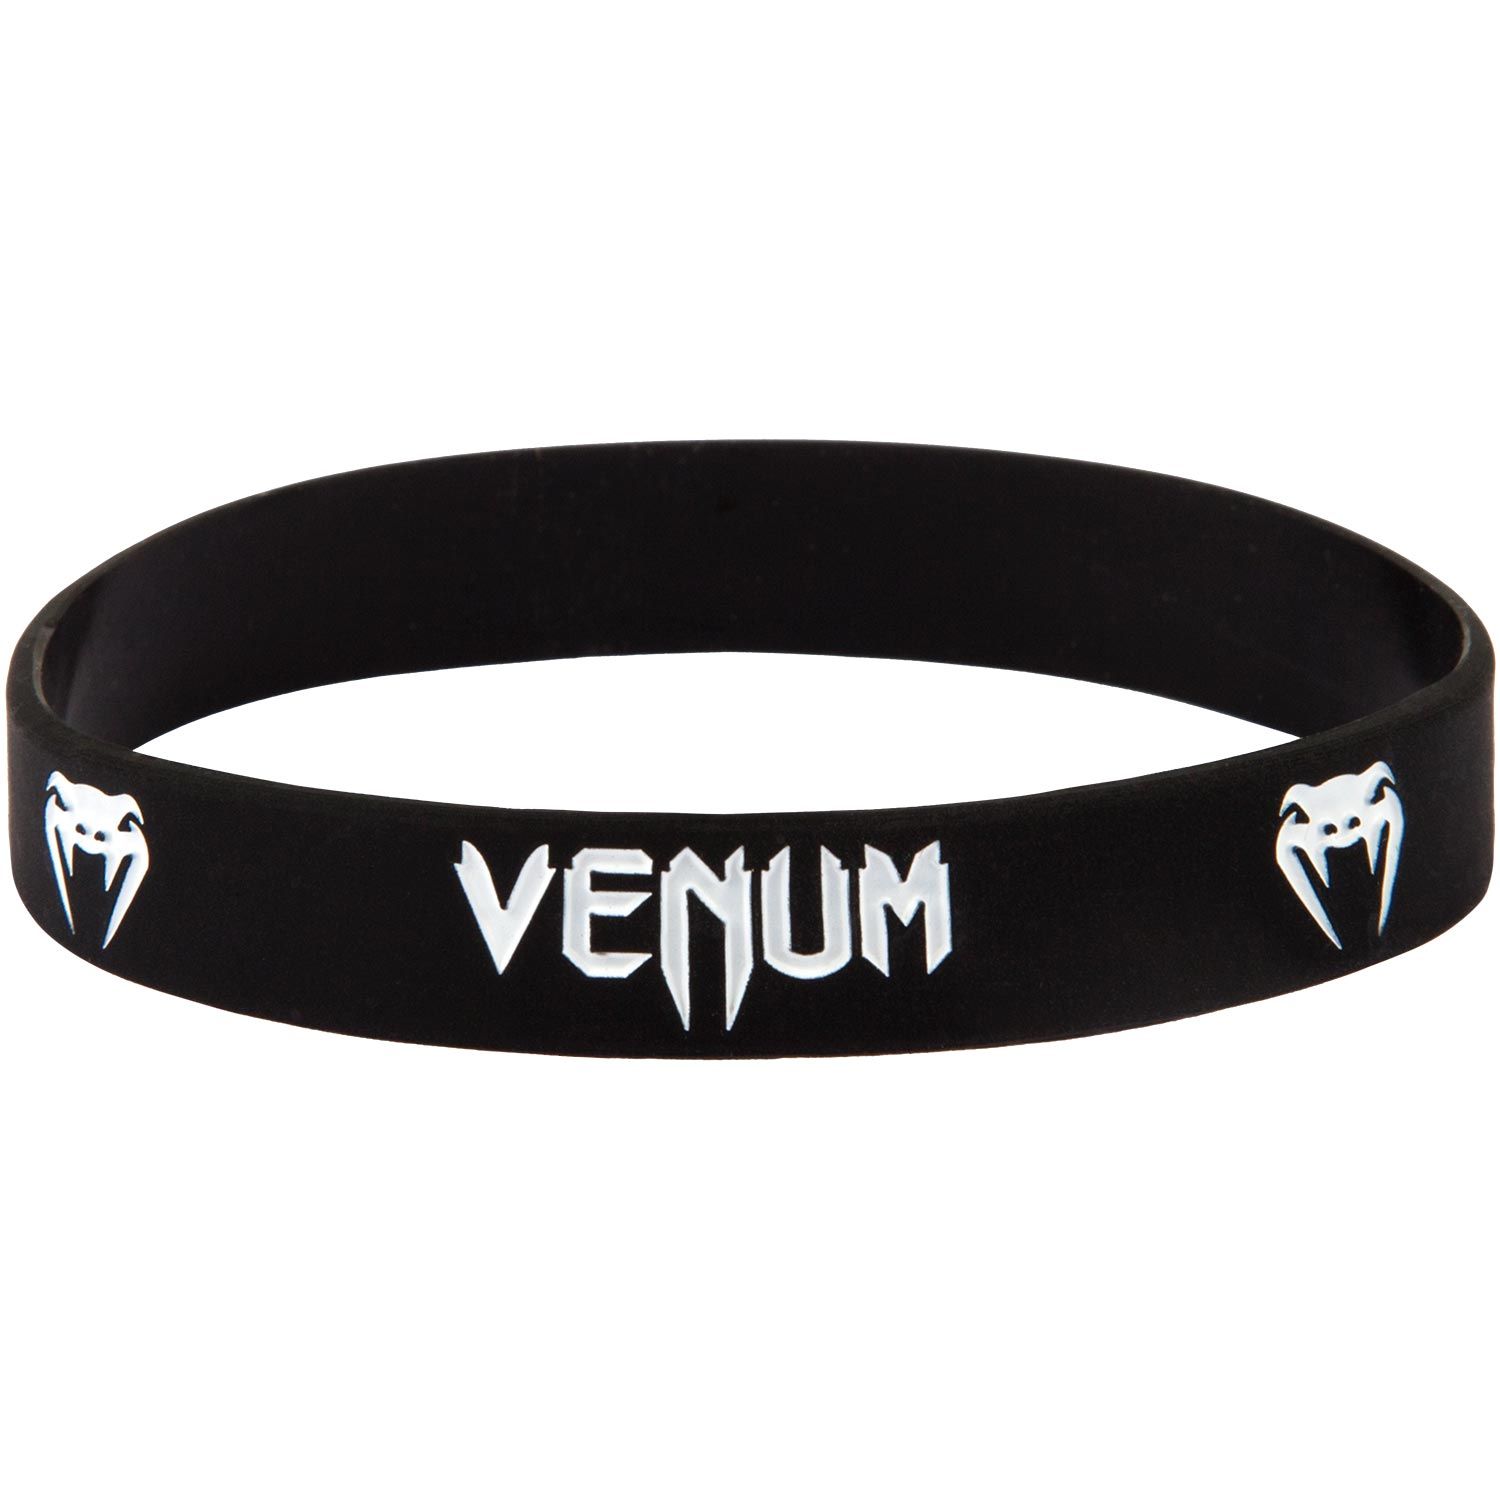 Venum Rubber Band  - Black/White